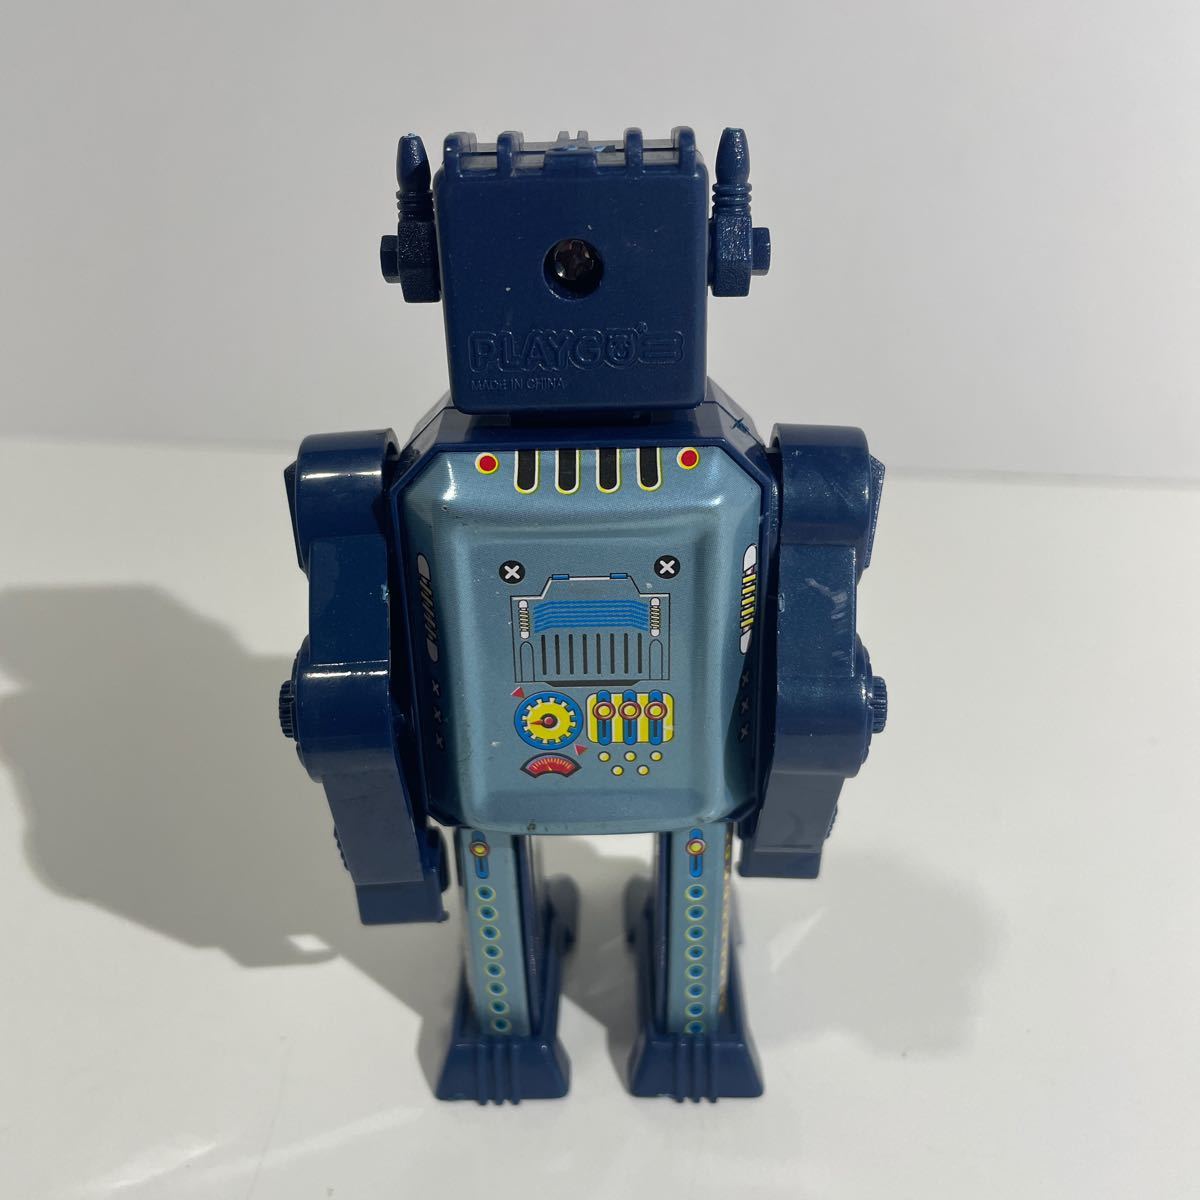  подлинная вещь редкость PLAY GO жестяная пластина робот игрушка retro рабочее состояние подтверждено 